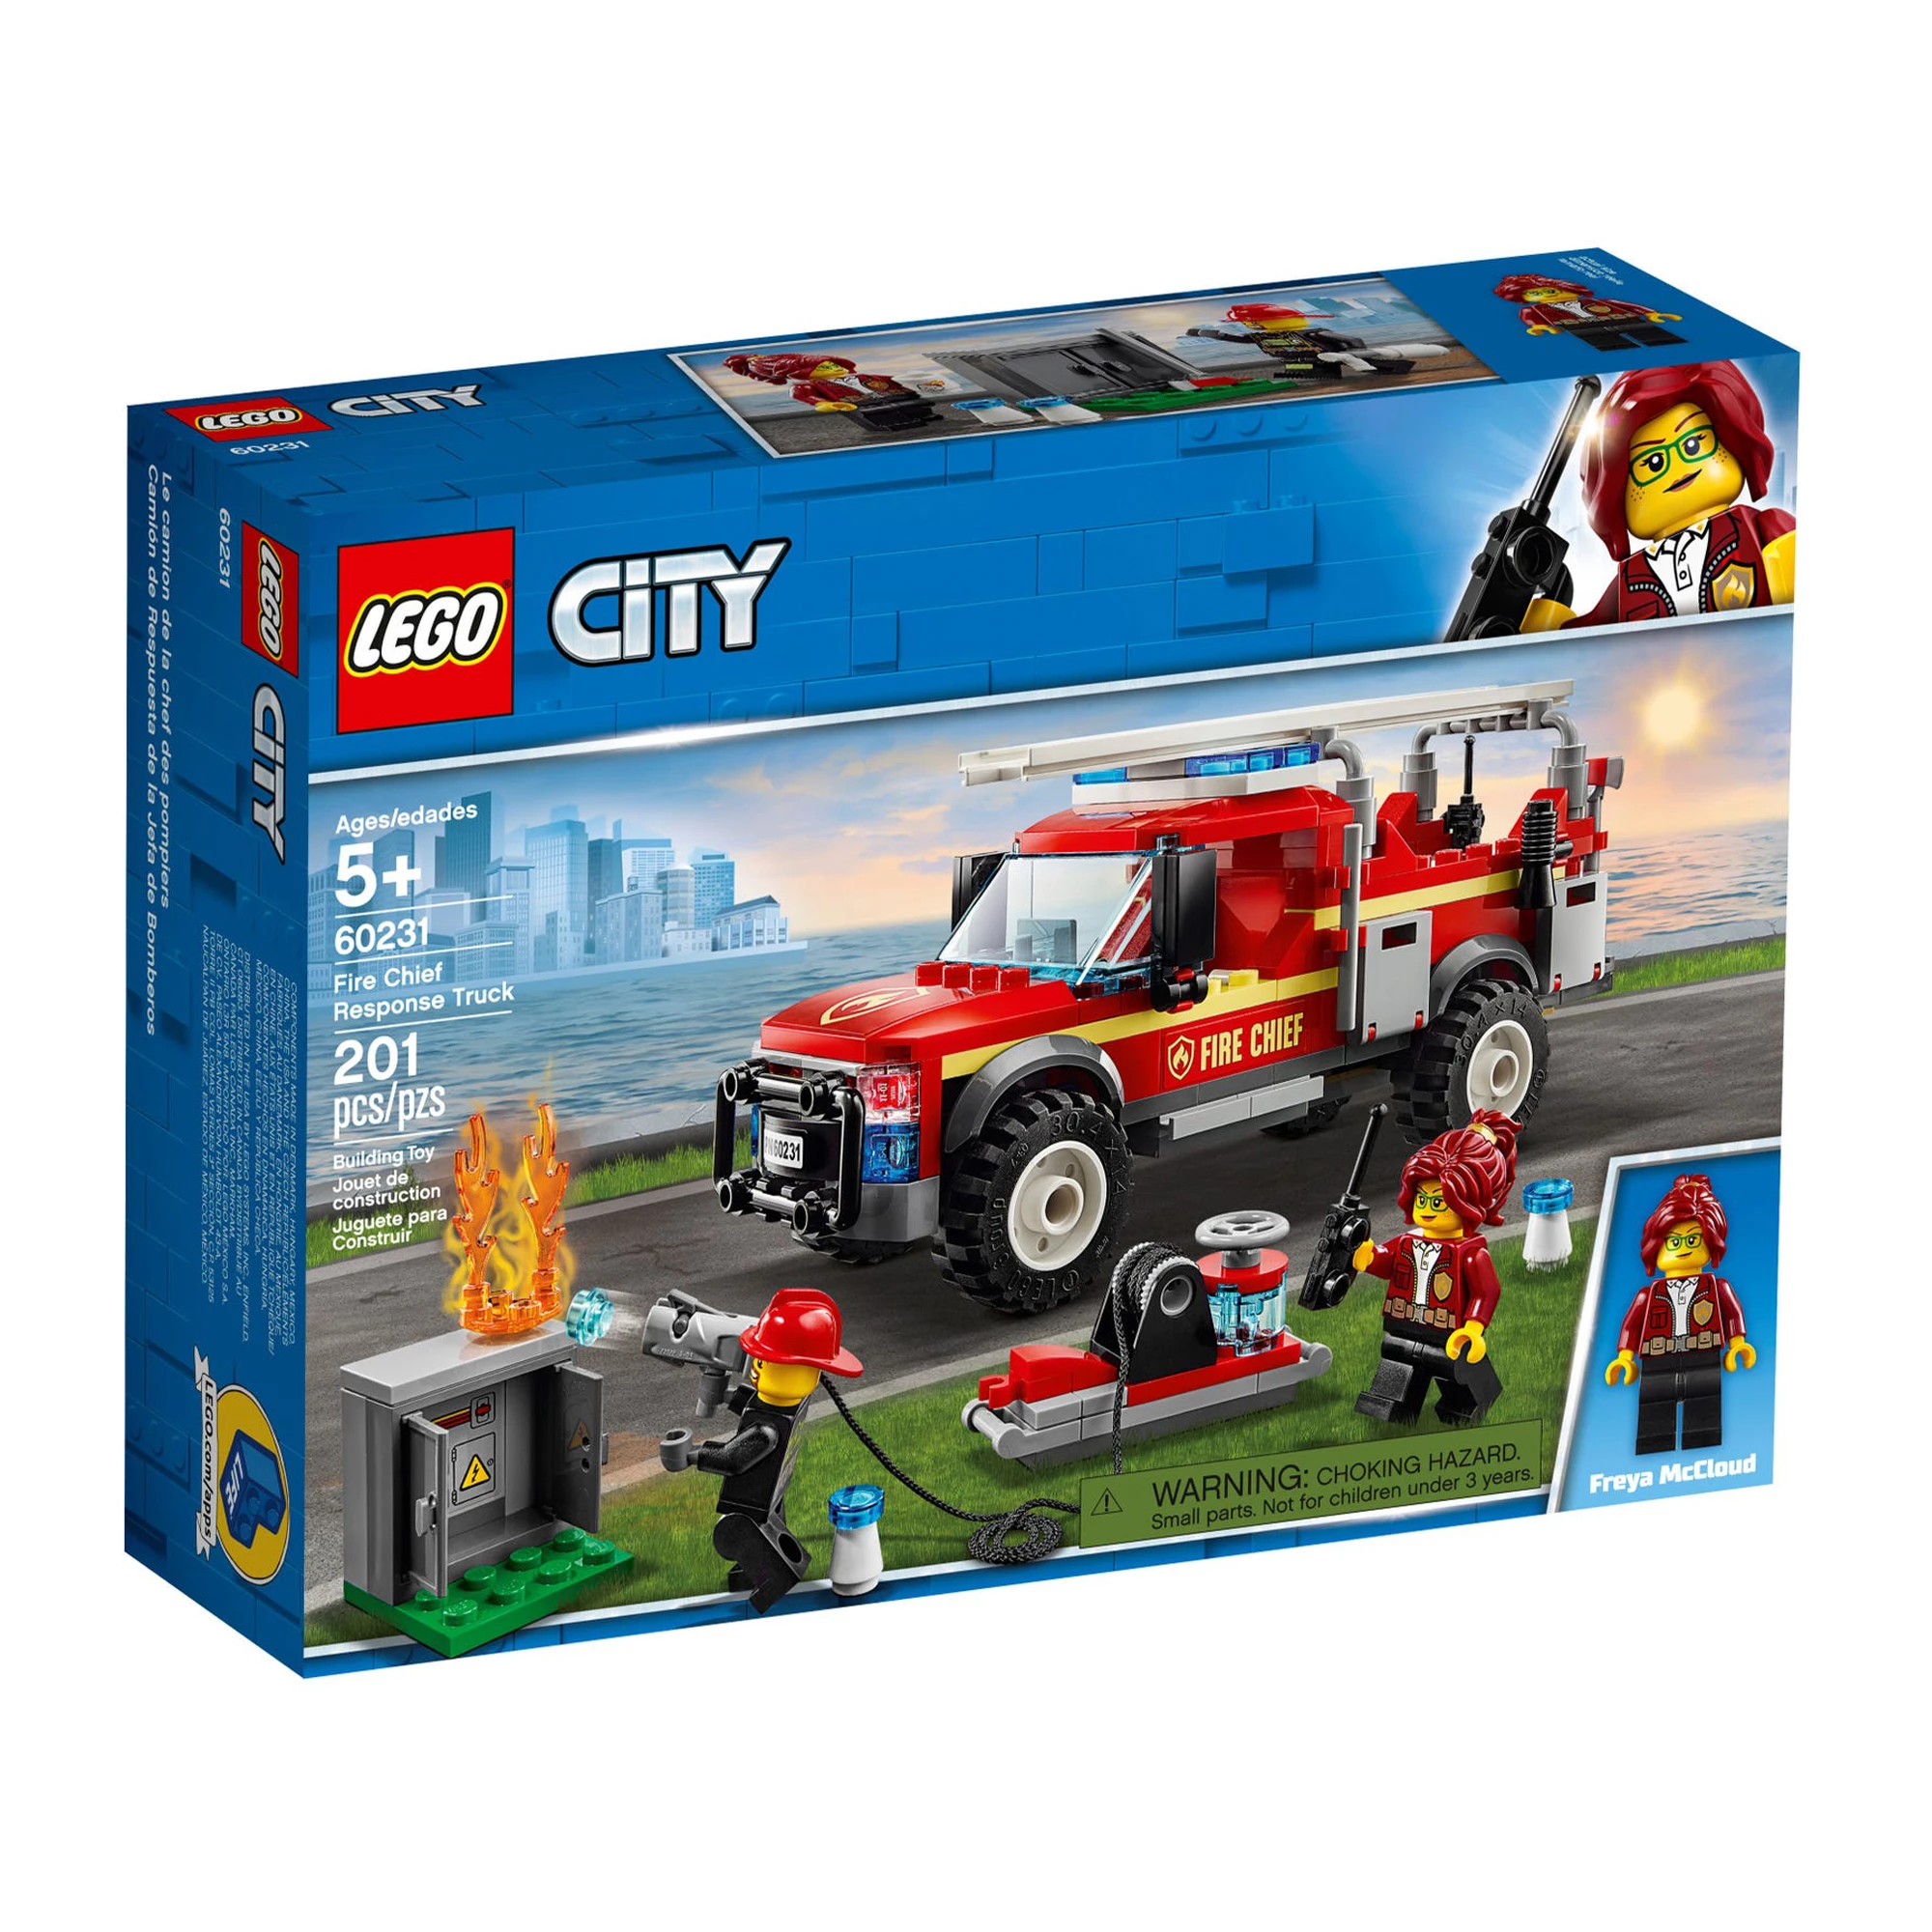 Блочный конструктор LEGO City «Грузовик начальника пожарной охраны» (60231)